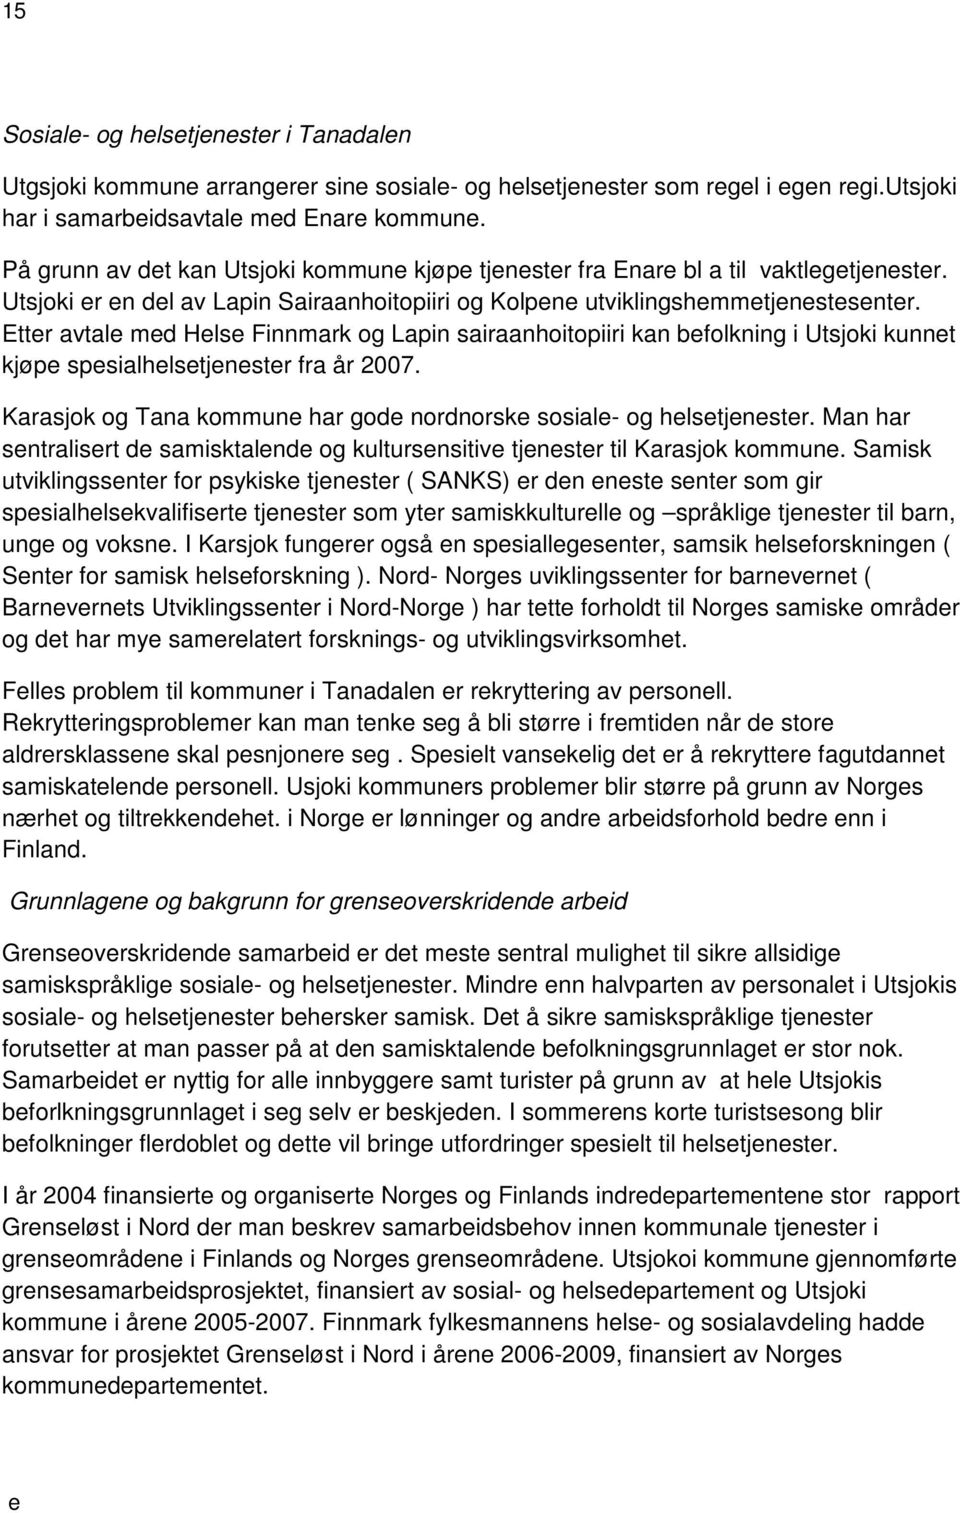 Ettr avtal md Hls Finnmark og Lapin sairaanhoitopiiri kan bfolkning i Utsjoki kunnt kjøp spsialhlstjnstr fra år 2007. Karasjok og Tana kommun har god nordnorsk sosial- og hlstjnstr.